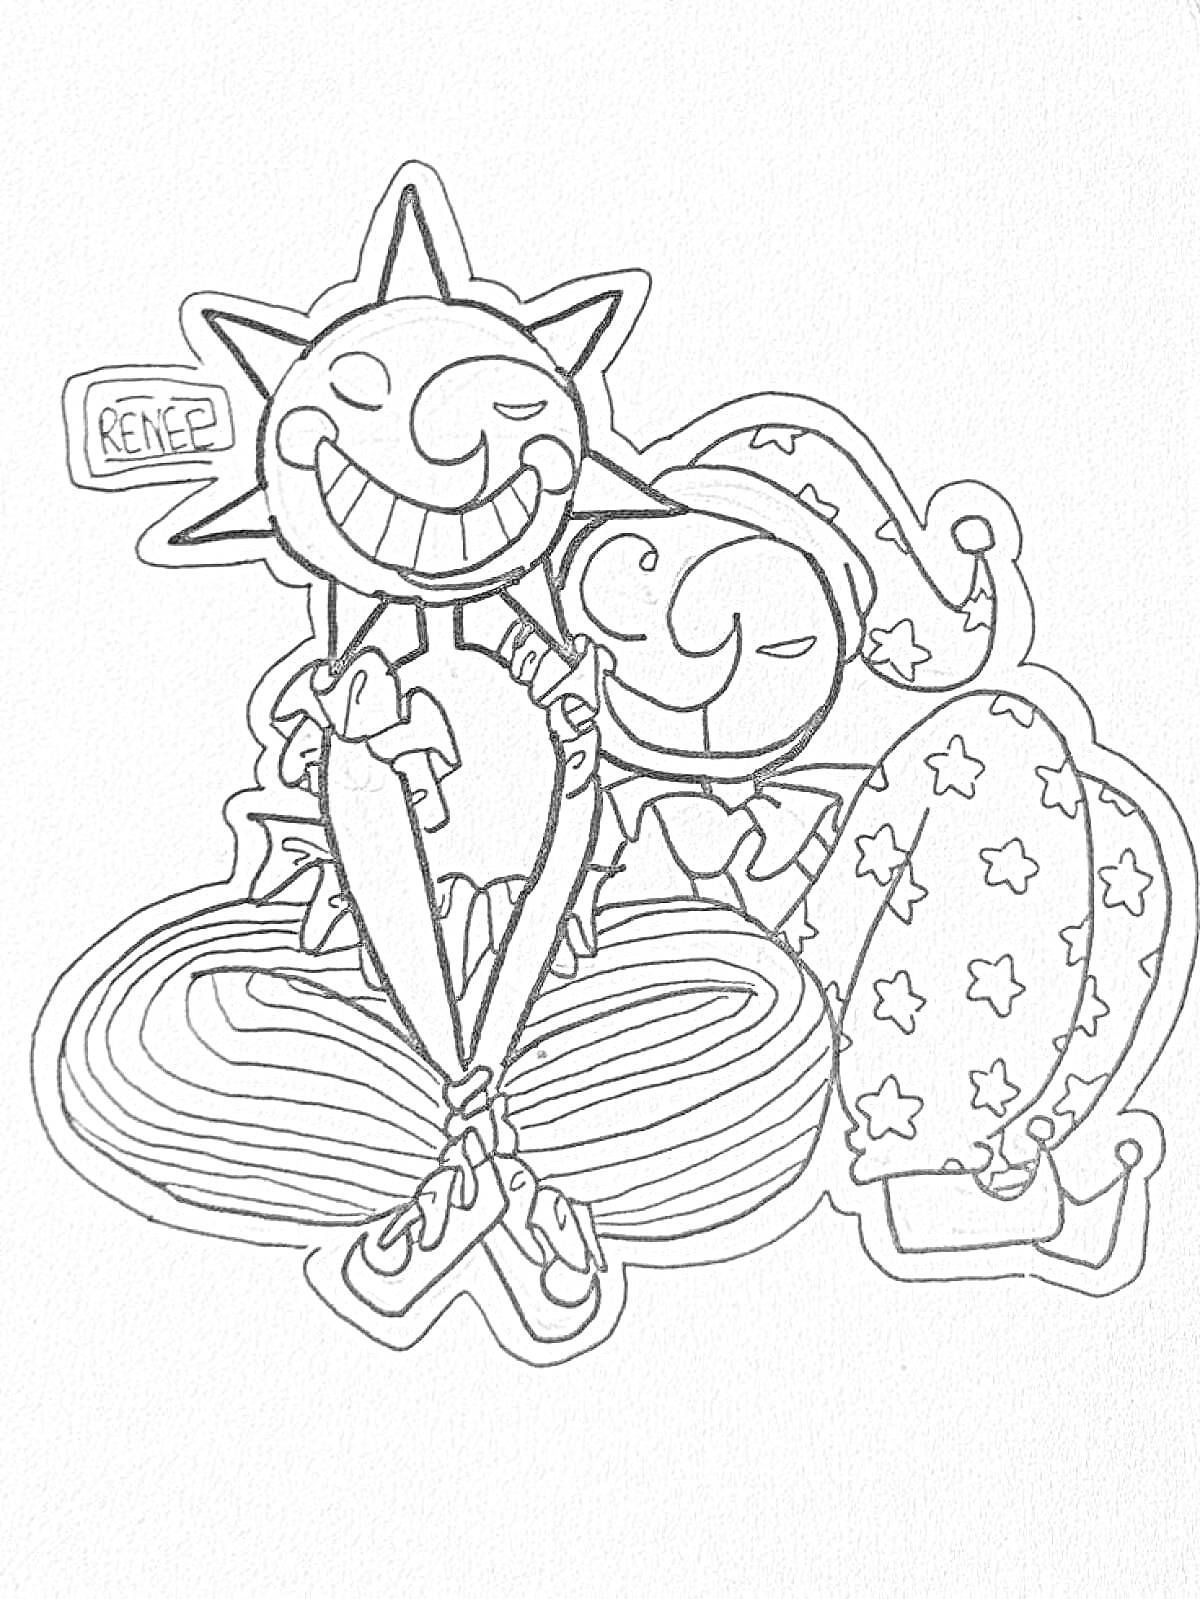 Раскраска солнце и луна из FNAF 9, сидящие рядом, с улыбками, в костюмах с солнечными и звездными элементами